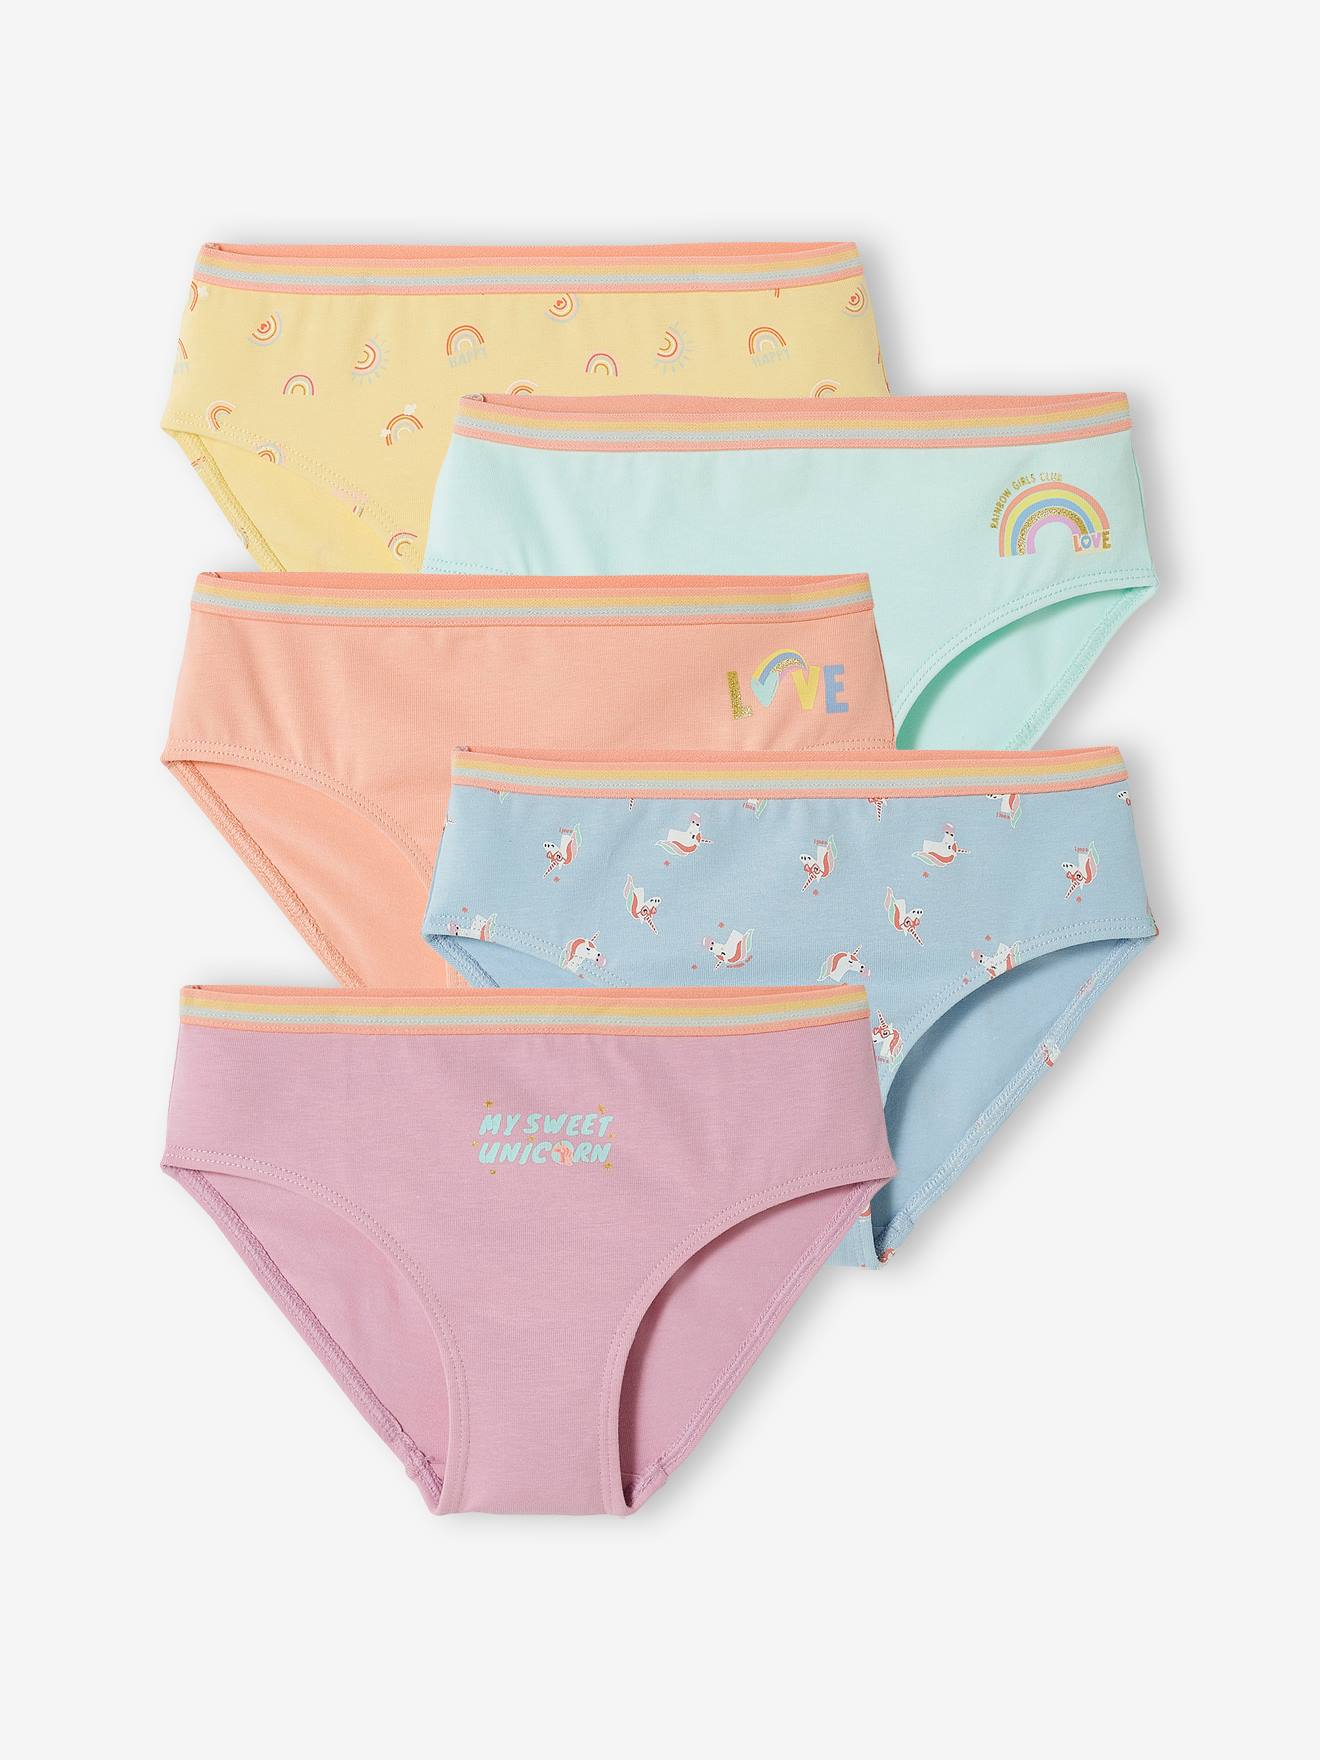 Carter's Child of Mine Toddler Girls' Underwear - Unicorn, 2T-5T